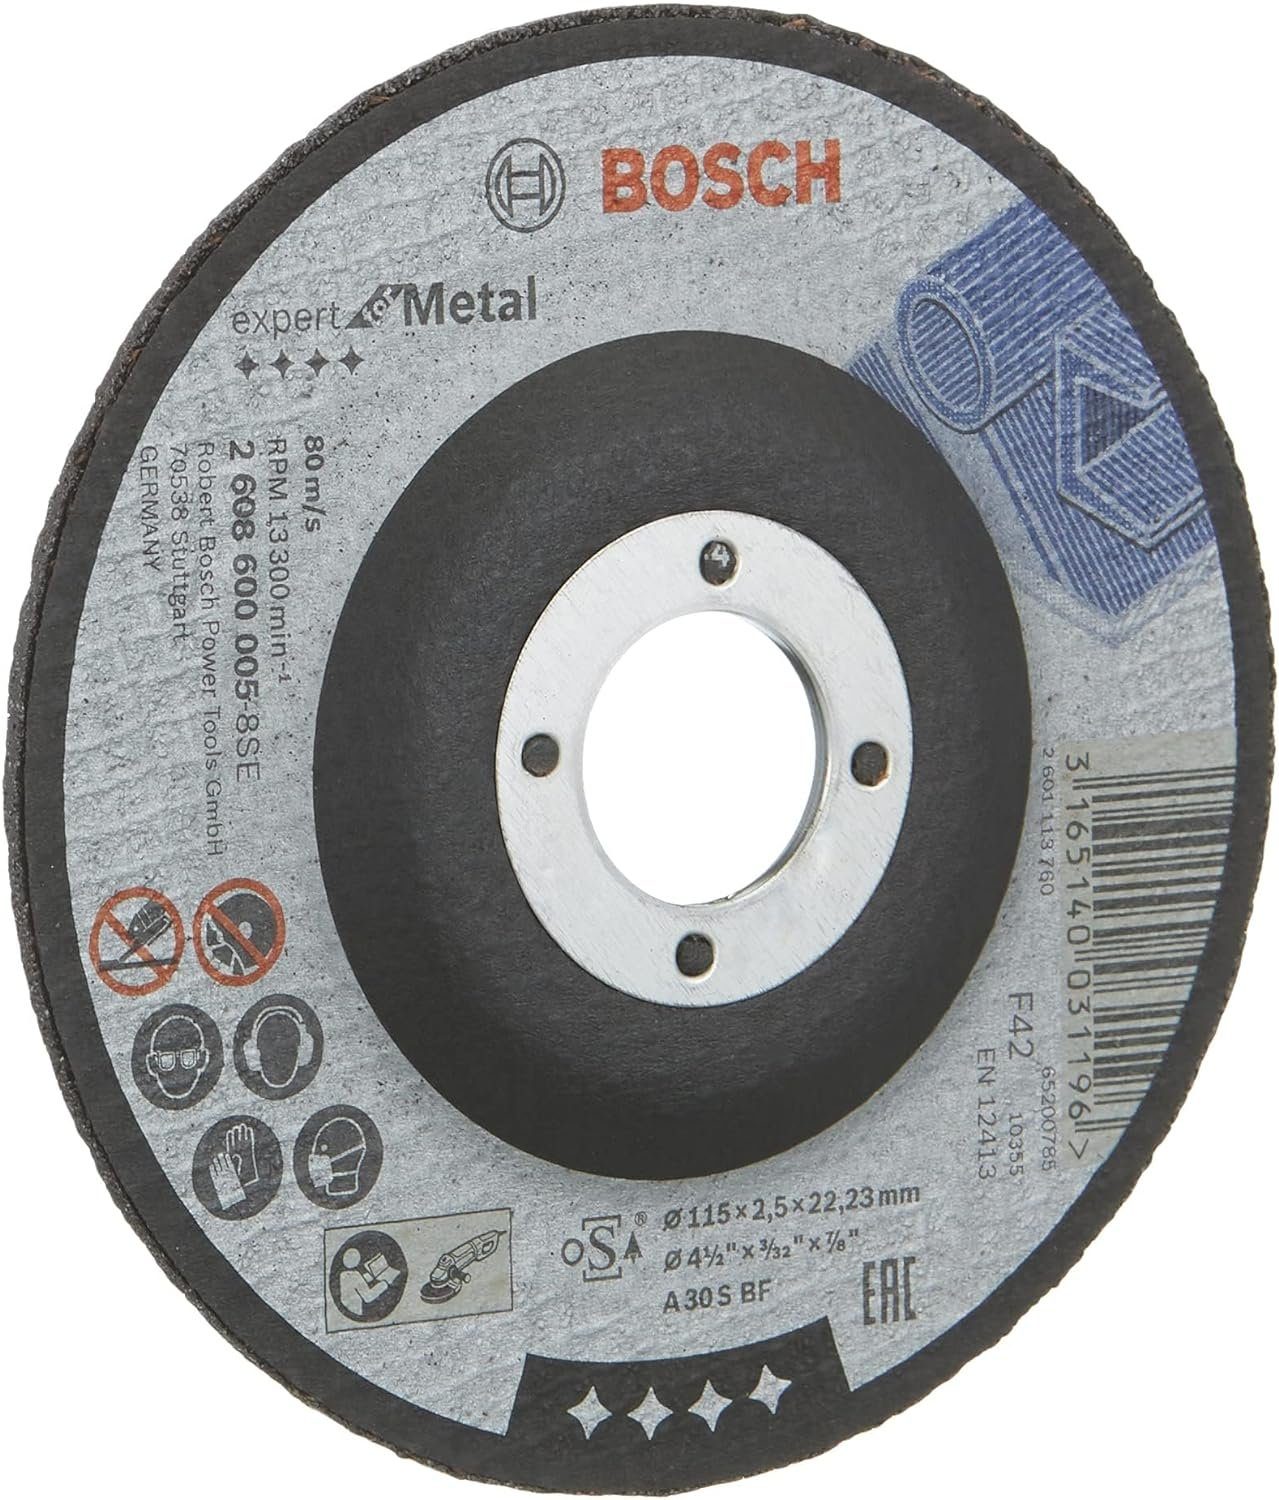 BOSCH BF gekröpft Trennscheibe S 2,5 Bohrfutter Bosch 115 A Metal mm mm l 30 for Expert